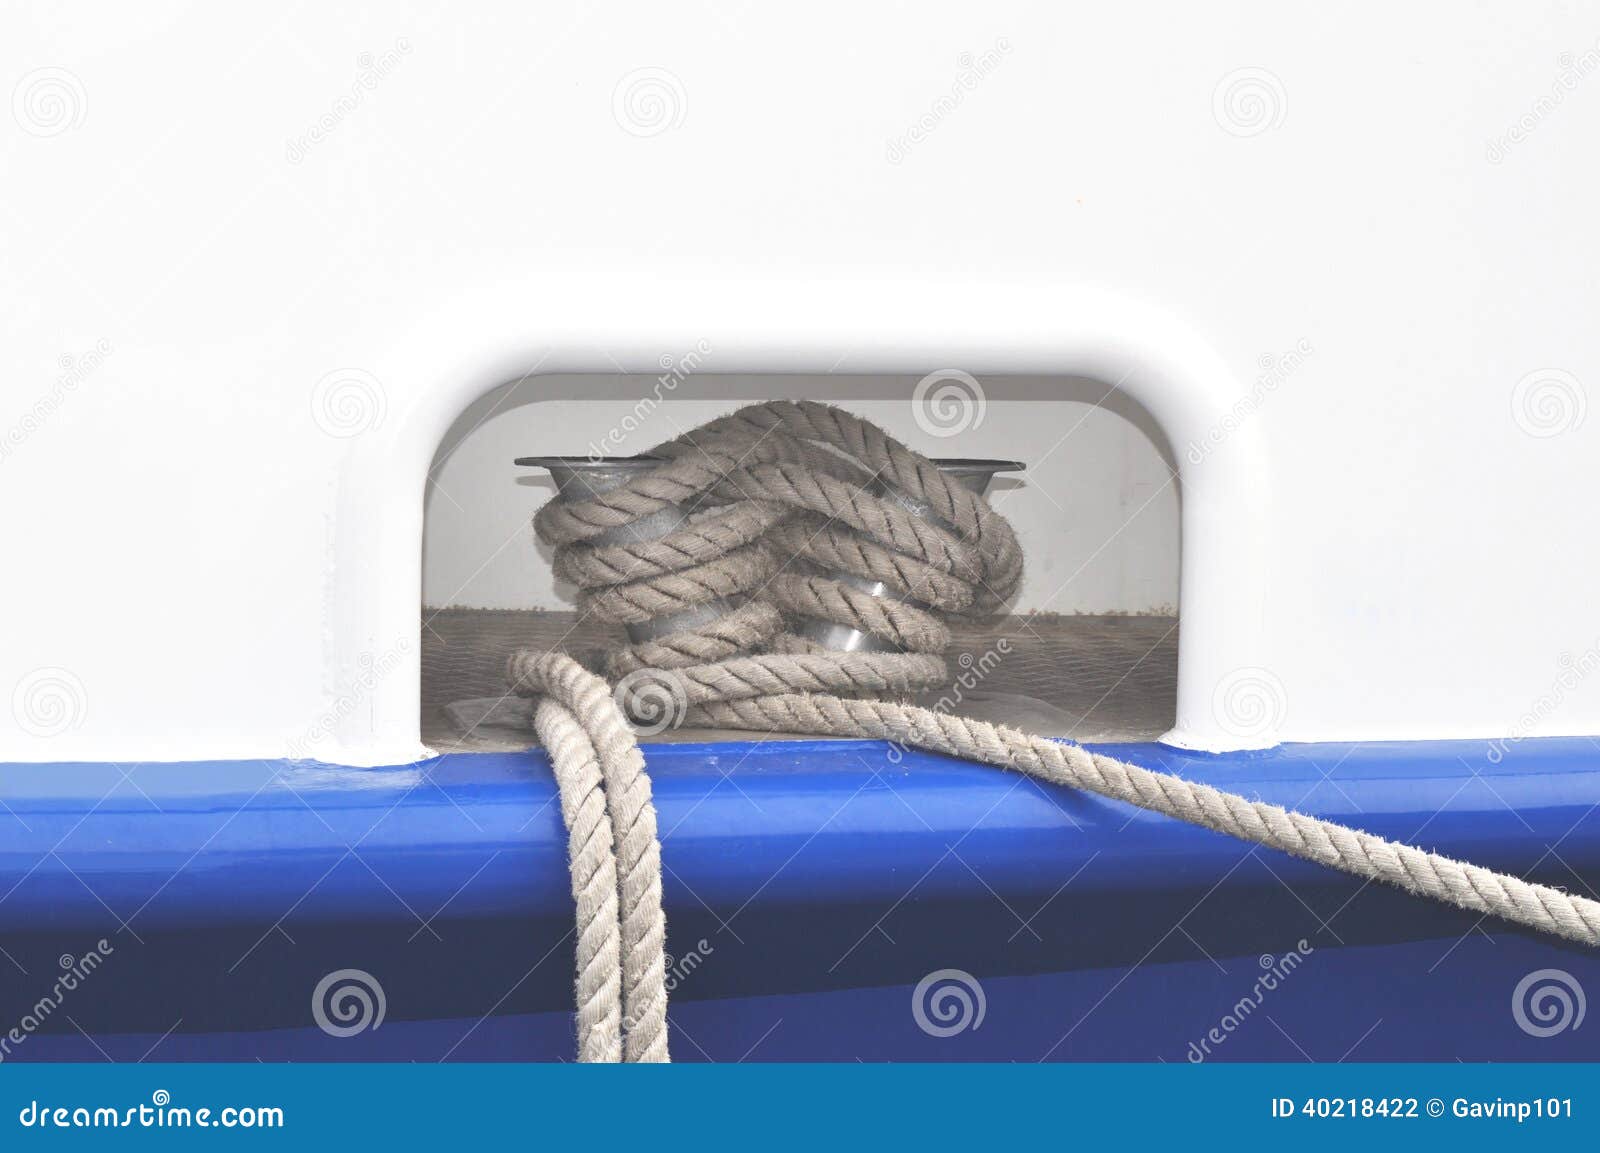 Hawsehole hawser and rope stock photo. Image of boat - 40218422